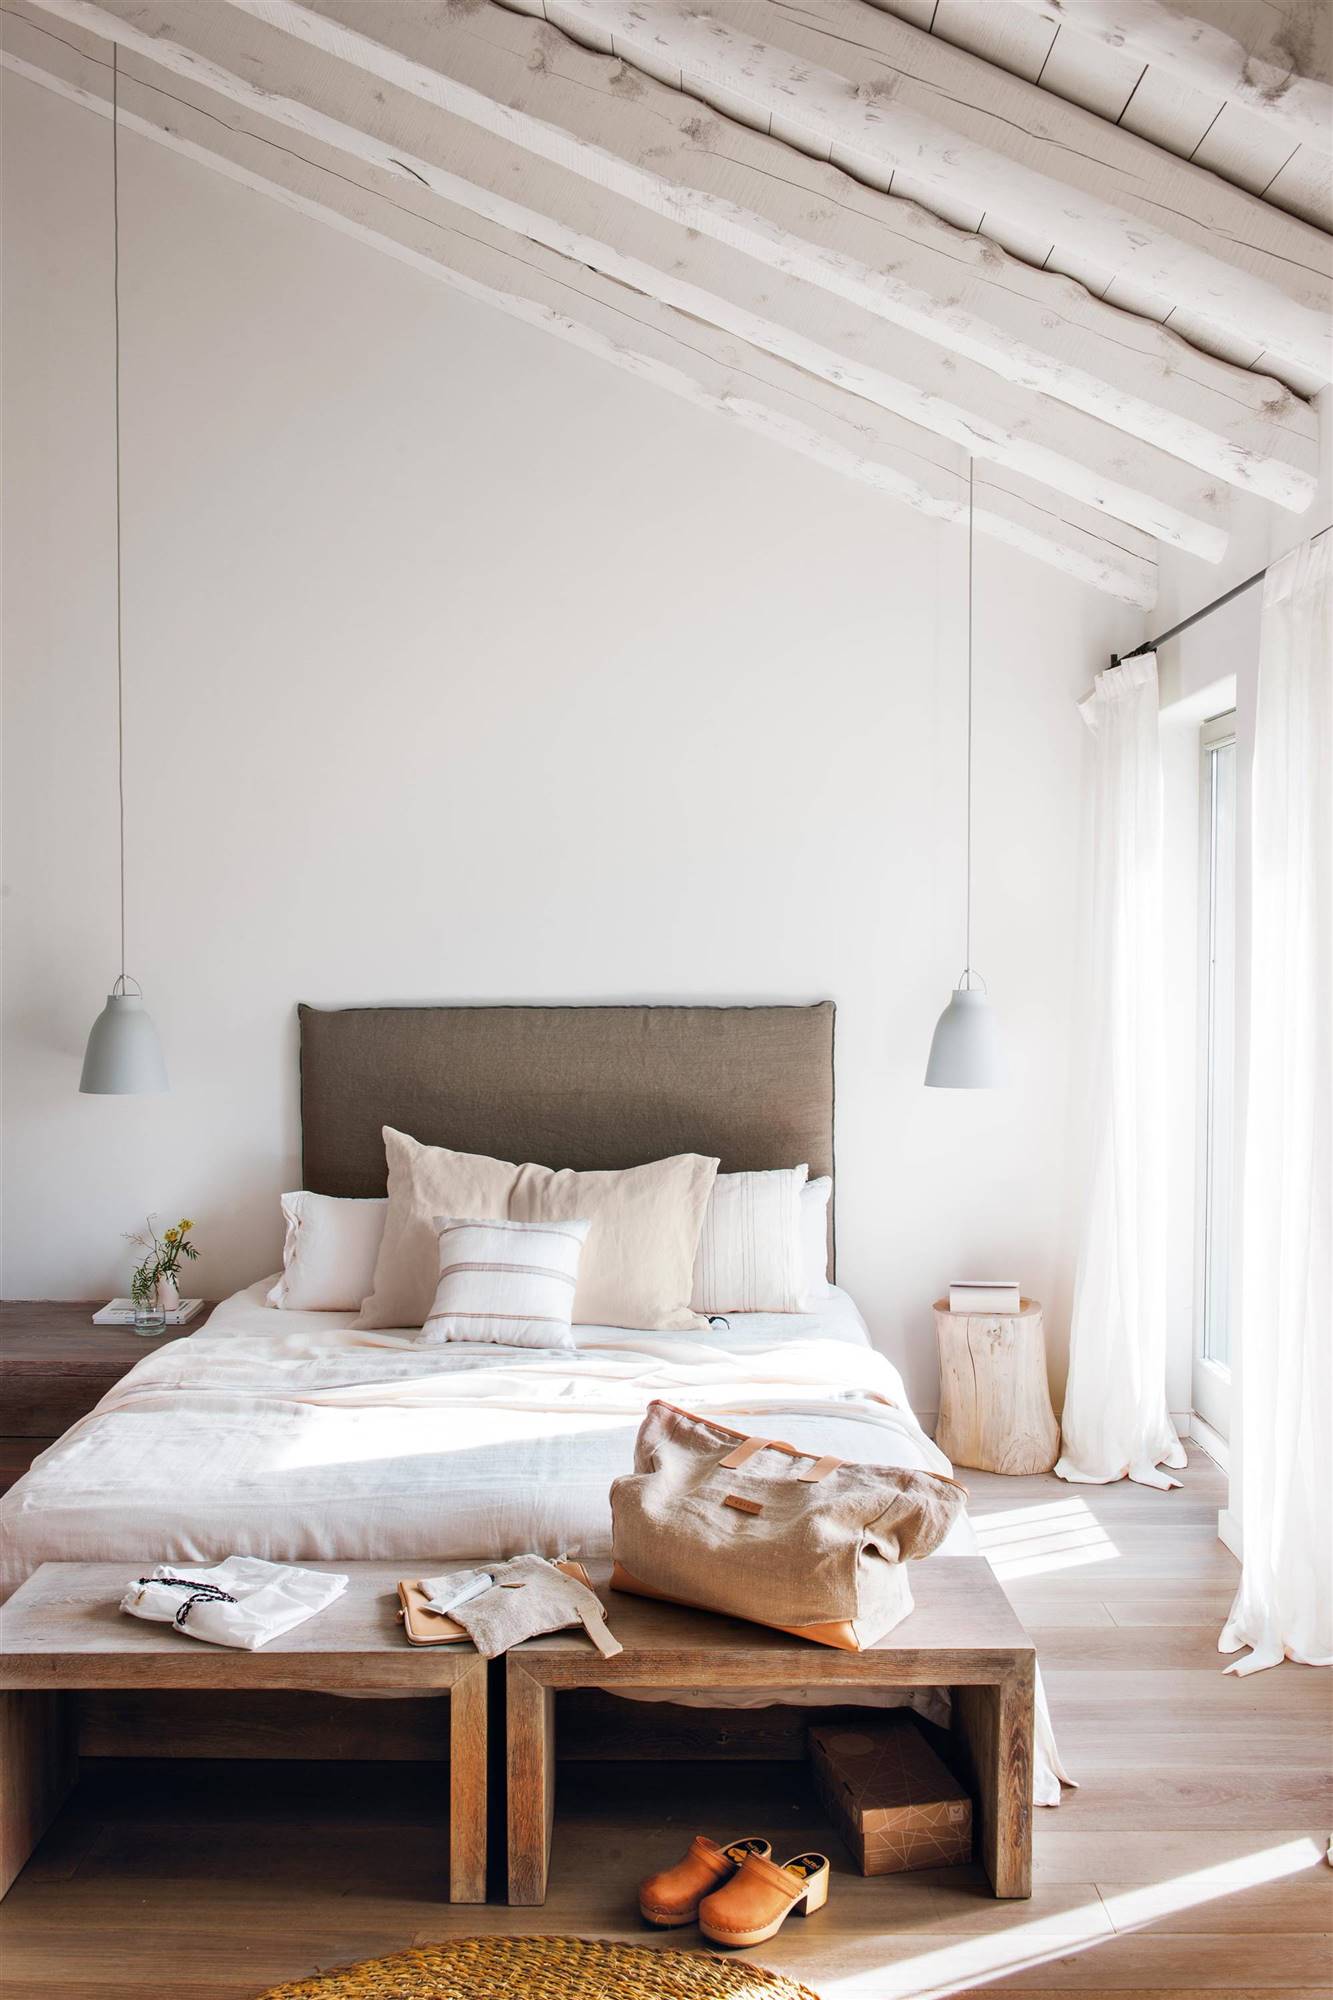 Dormitorio de estilo minimalista con cabecero tapizado y tronco a modo de mesita de noche. 